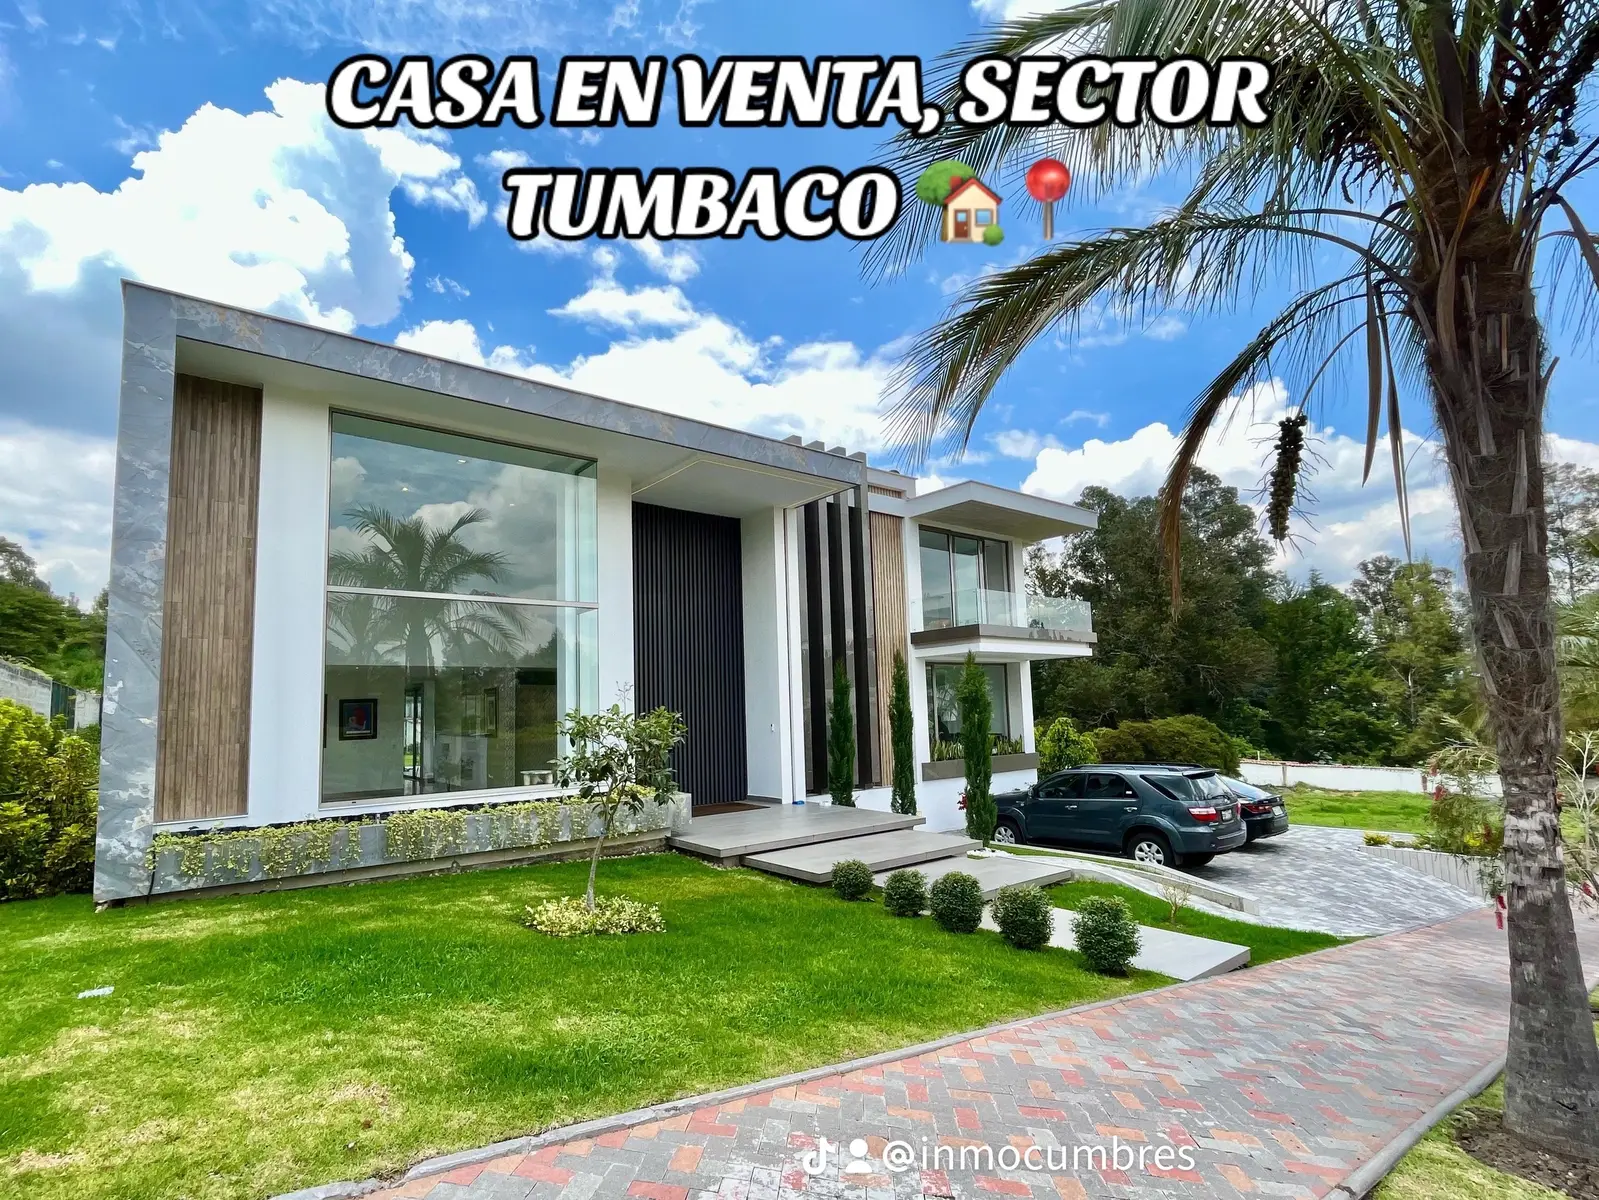 #inmocumbres #inmobiliaria #quito_ecuador🇪🇨 #venta #casa #casaenventa #ventacasa #tumbaco #ventaquito #ventatumbaco #casatumbaco #casaquito #casadelujo #casamoderna 